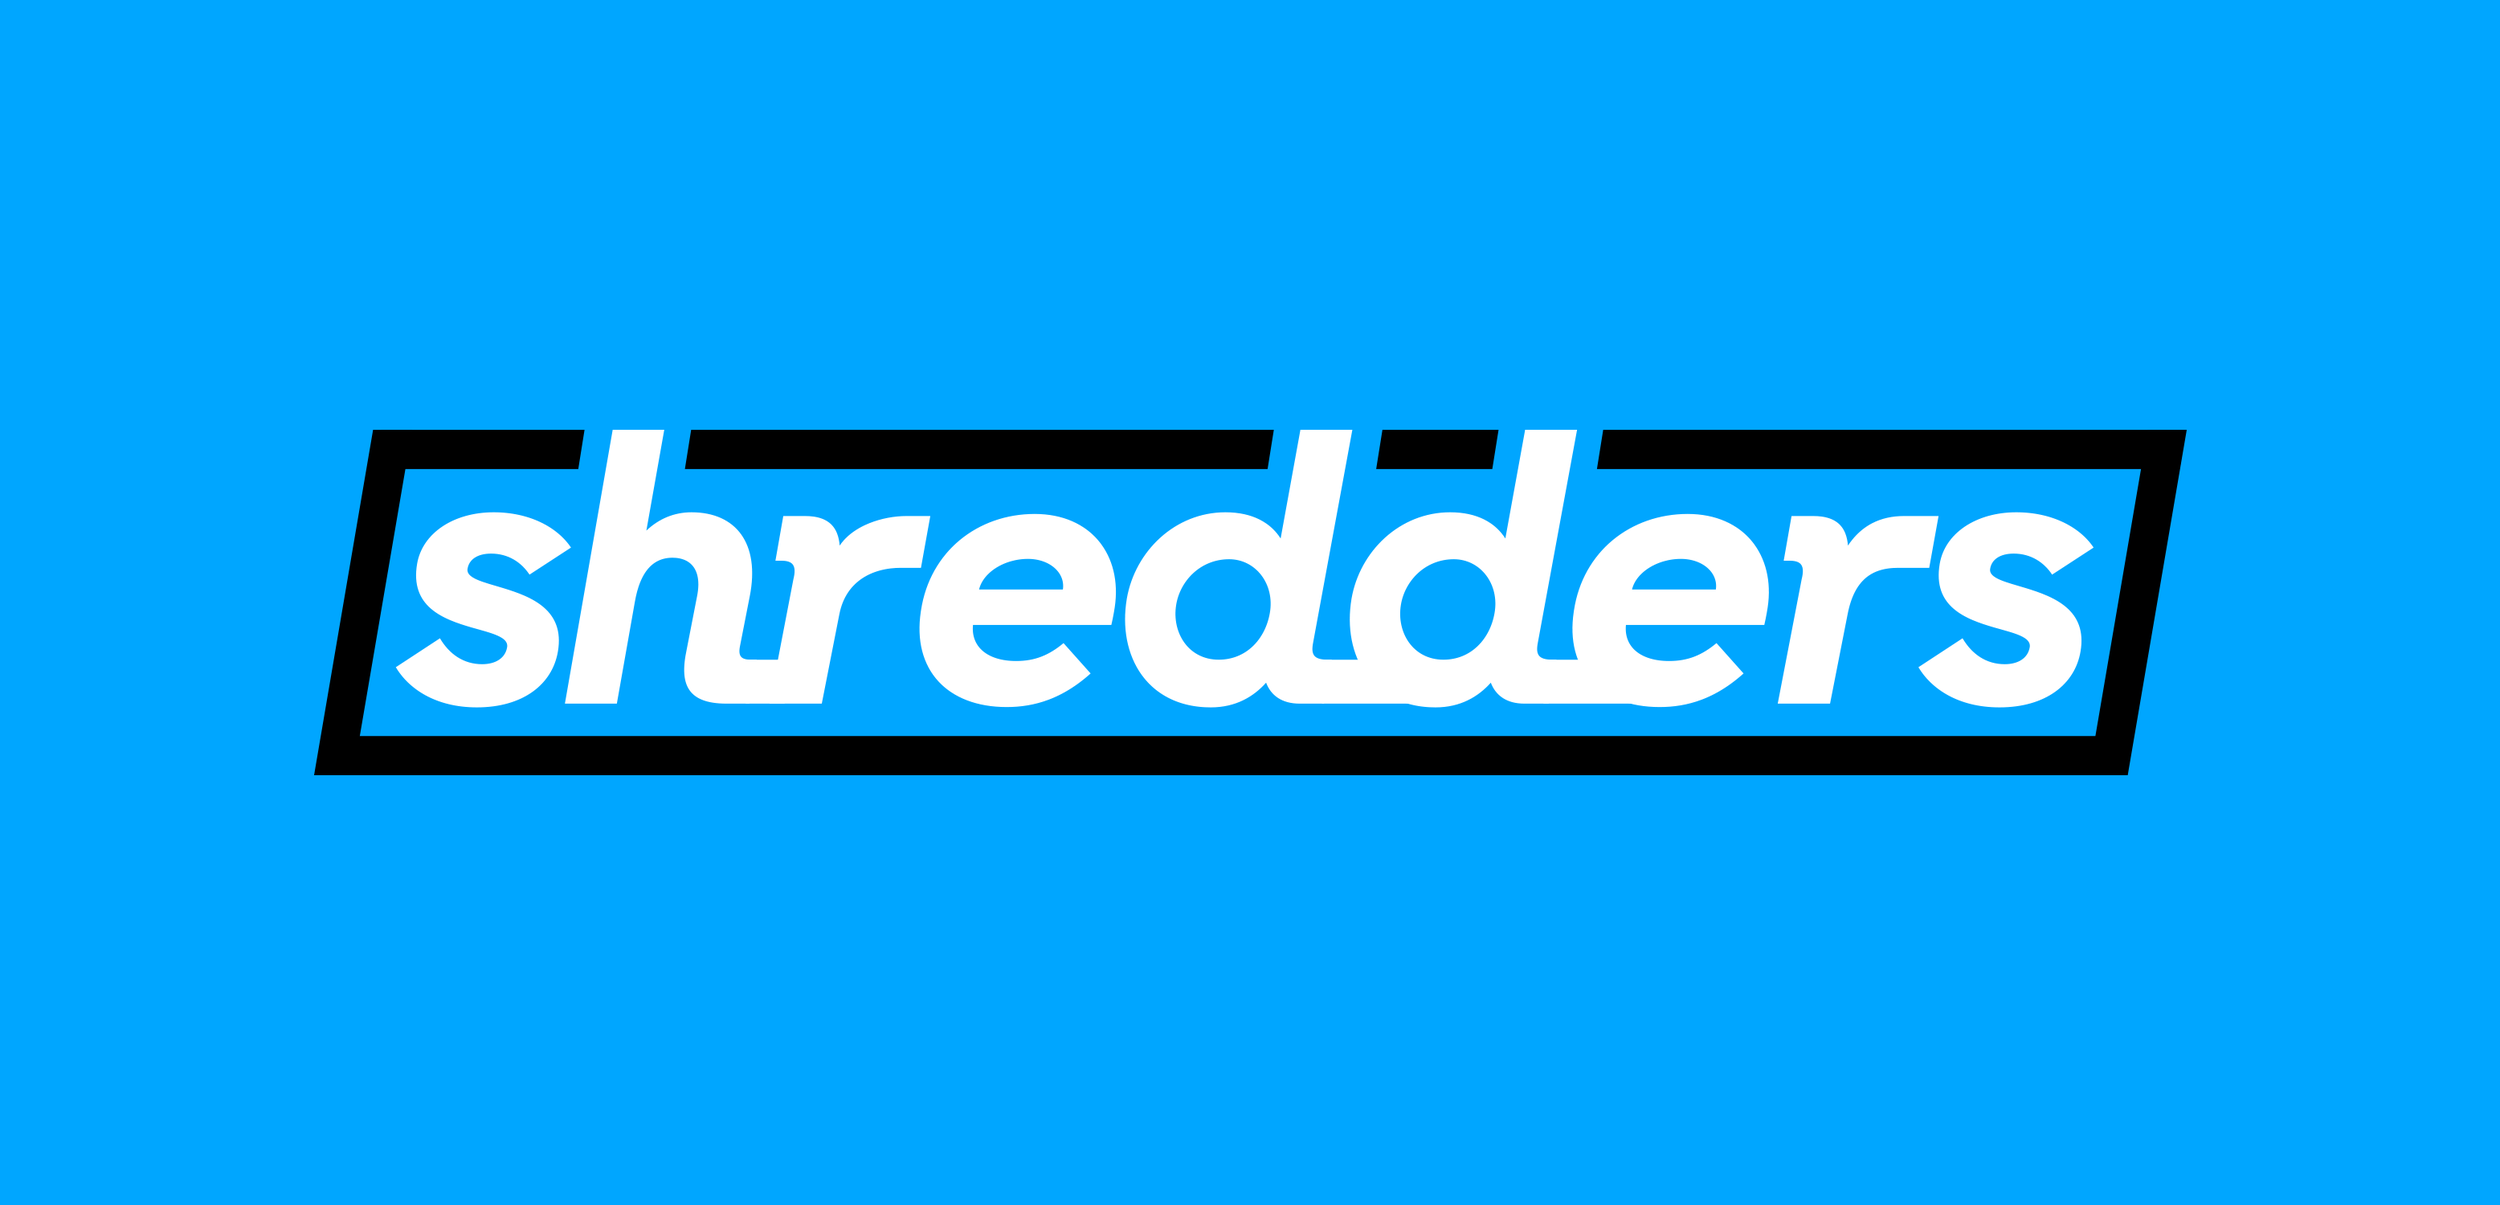 MTV-shredders-logo-long-v2.png